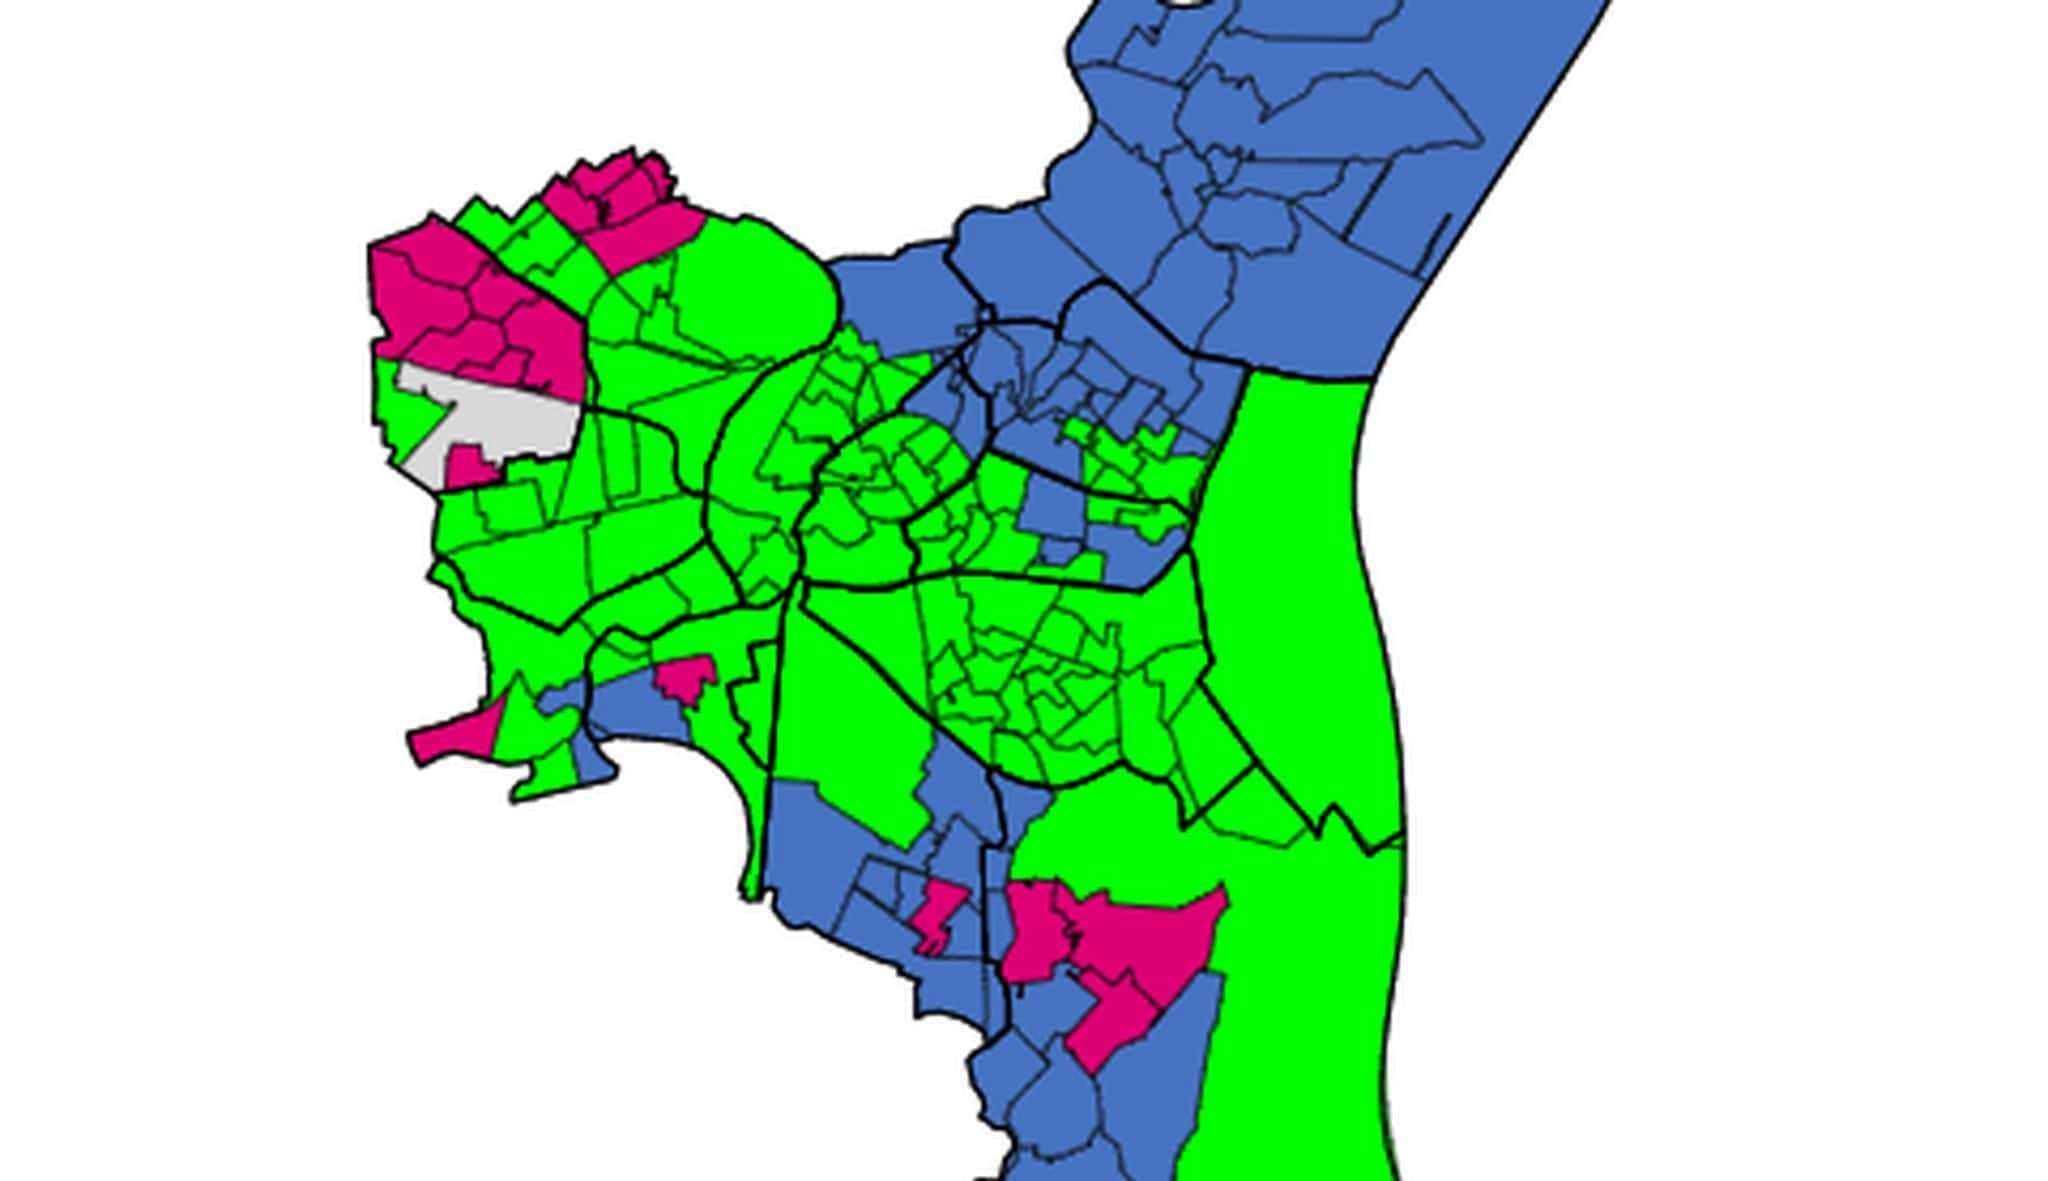 Municipales : 41,71% pour Jeanne Barseghian